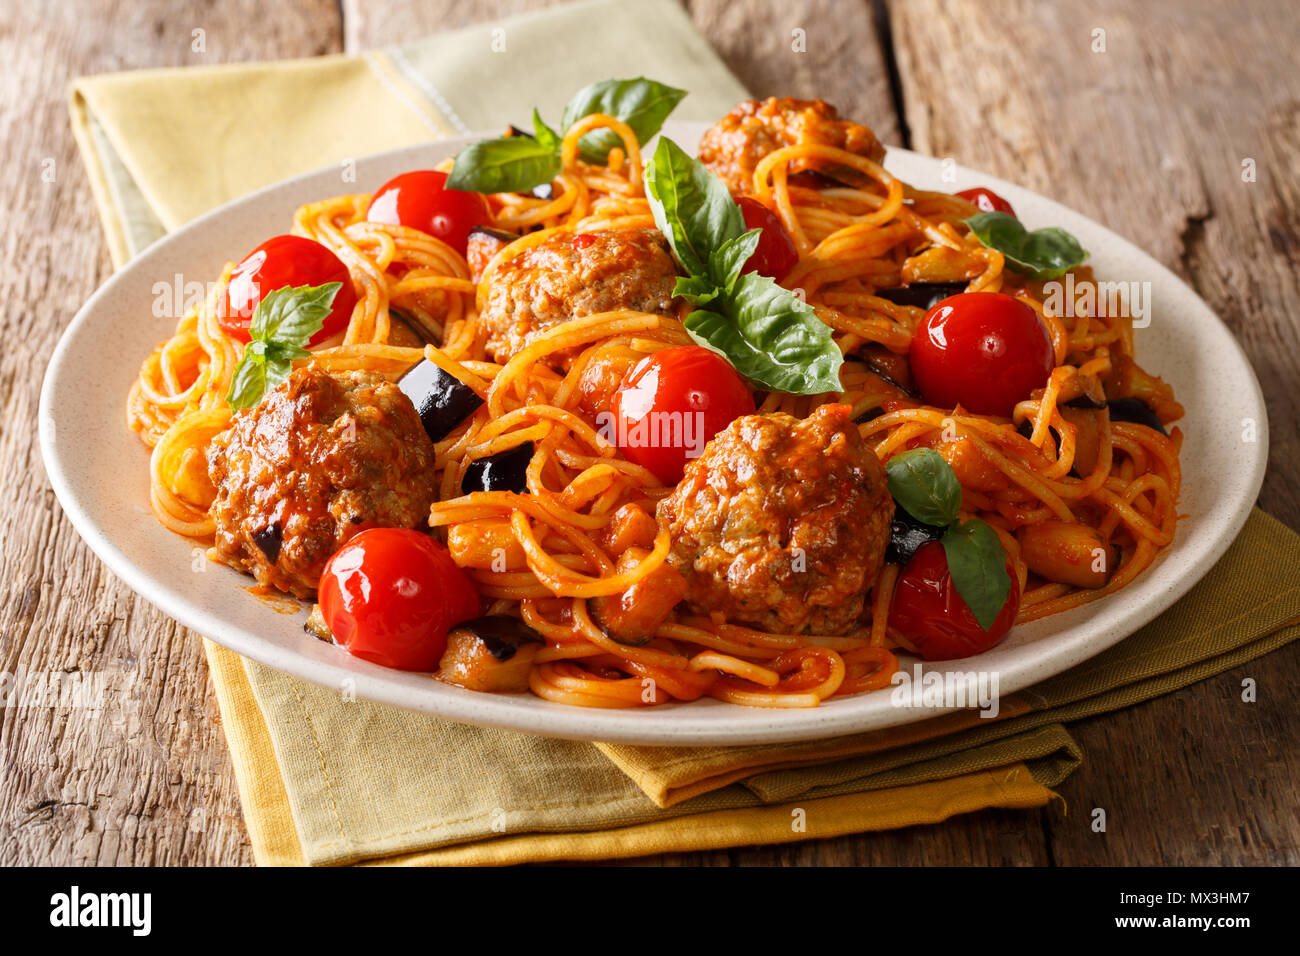 Köstliches Abendessen: Fleischbällchen mit Pasta Spaghetti, Auberginen und Tomaten close-up auf einem Teller auf dem Tisch. Horizontale Stockfoto